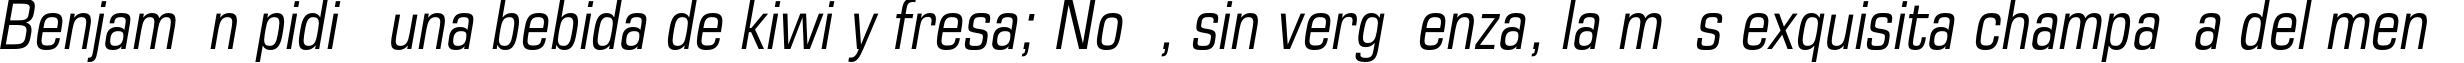 Пример написания шрифтом EuropeCond Italic текста на испанском